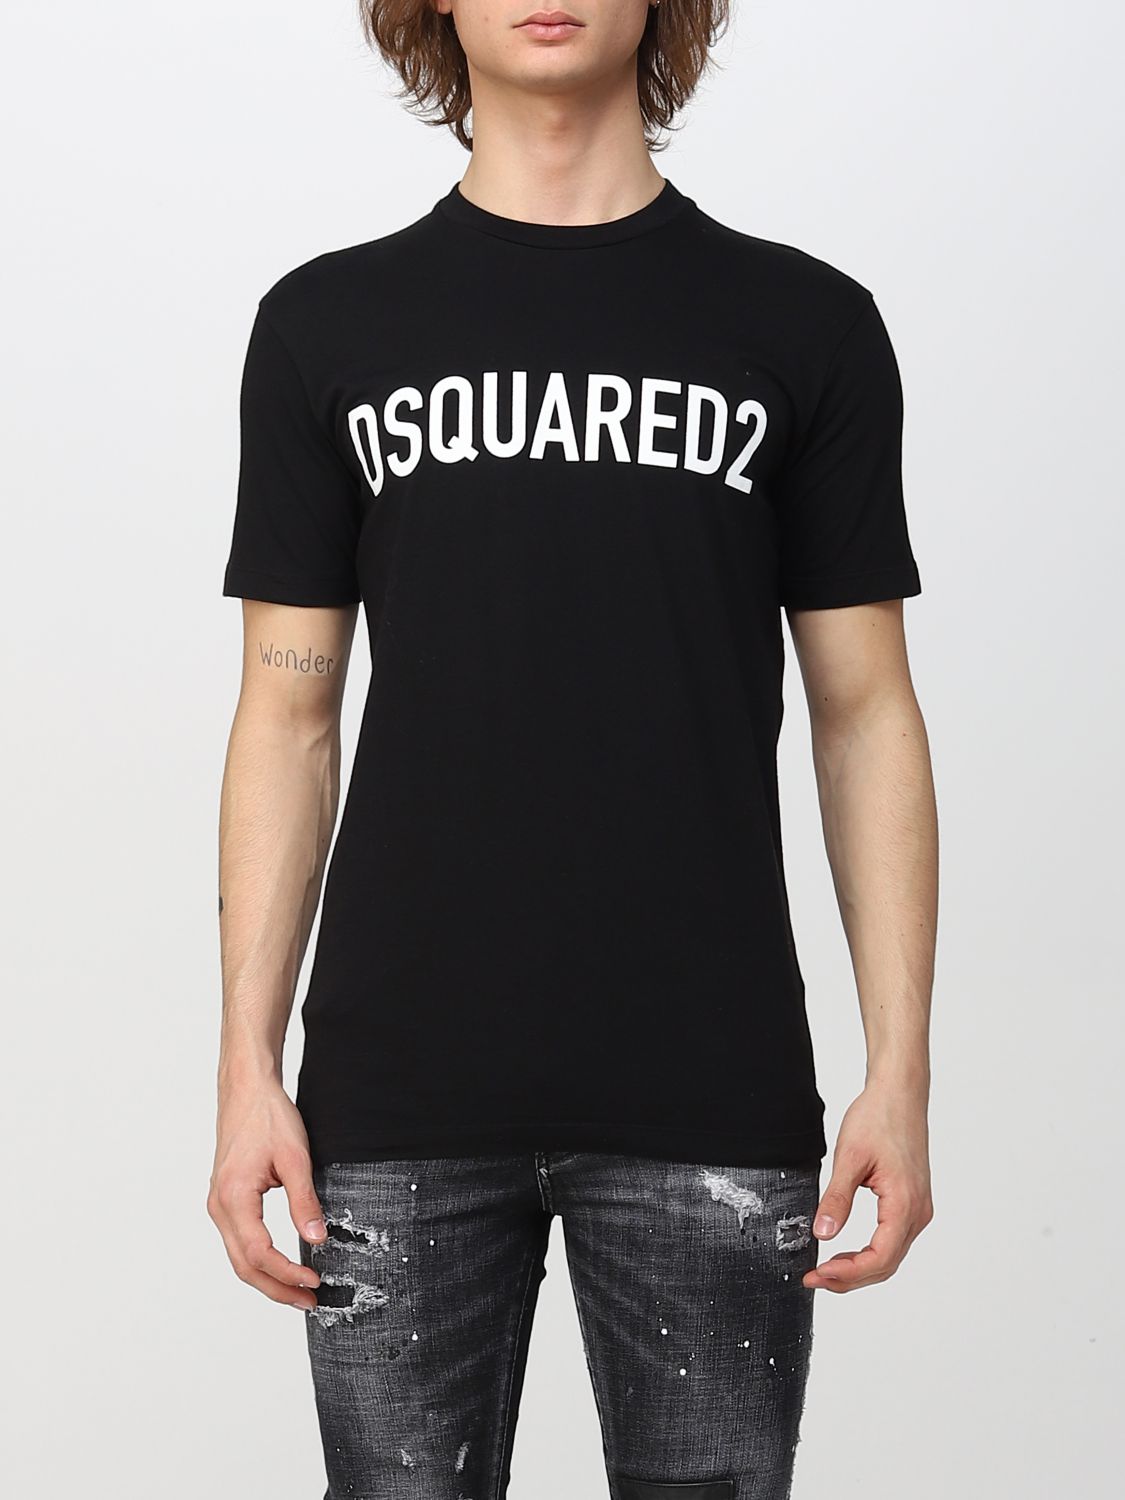 Dsquared2 T-shirt  Men Color Black